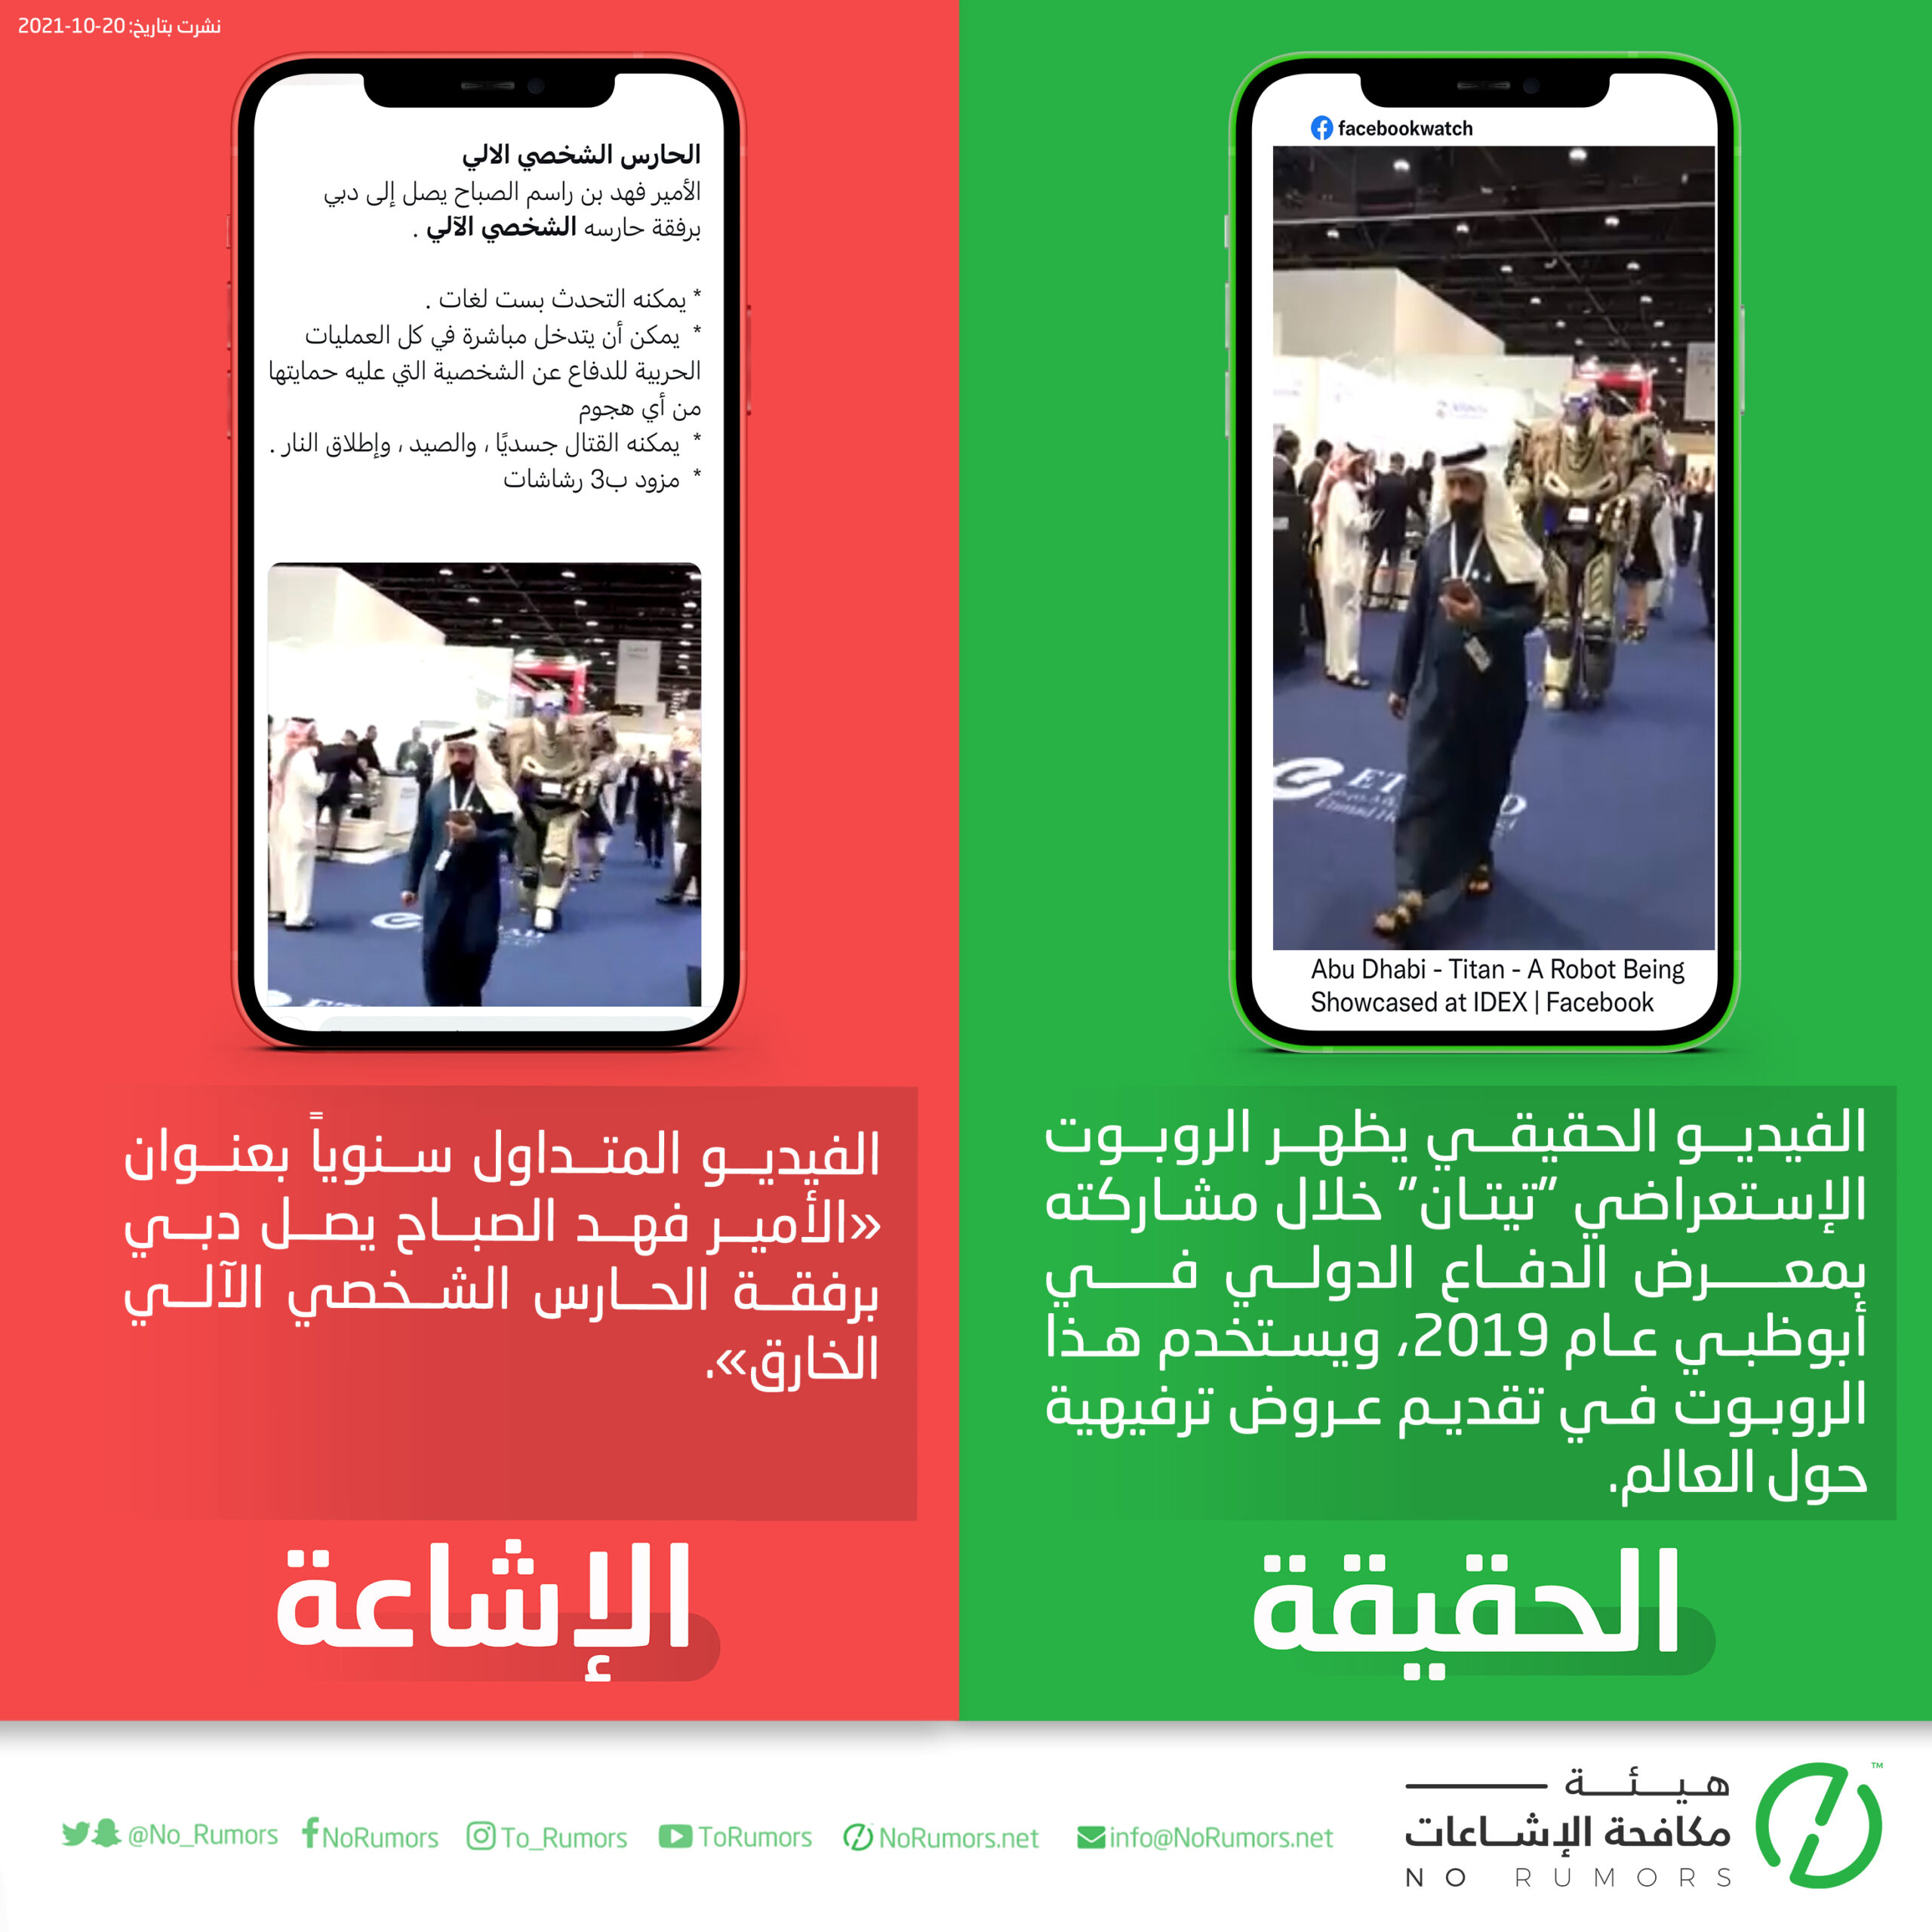 حقيقة الفيديو المتداول بعنوان «الأمير فهد الصباح يصل دبي برفقة الحارس الشخصي الآلي»